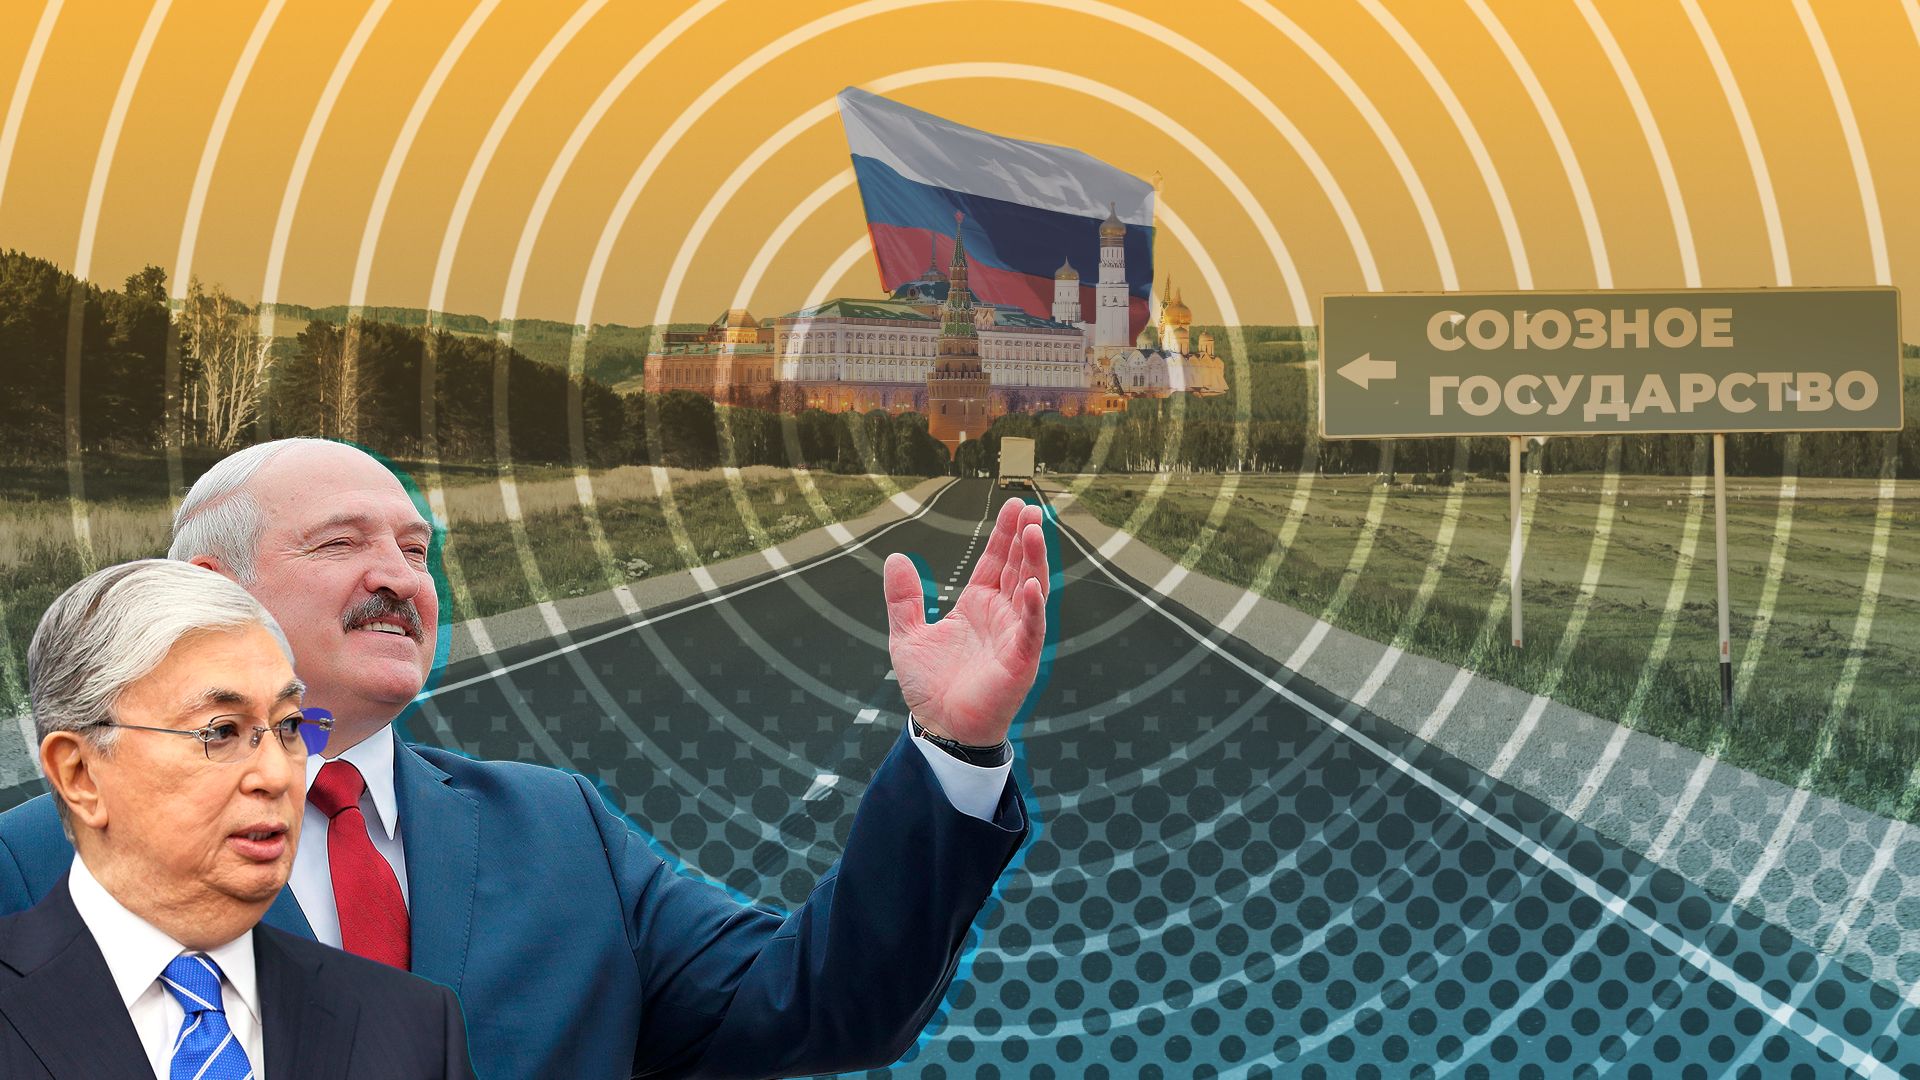 Вопросов больше нет: политолог Межевич объяснил, почему Казахстану будет проще войти в союз с Россией и Белоруссией